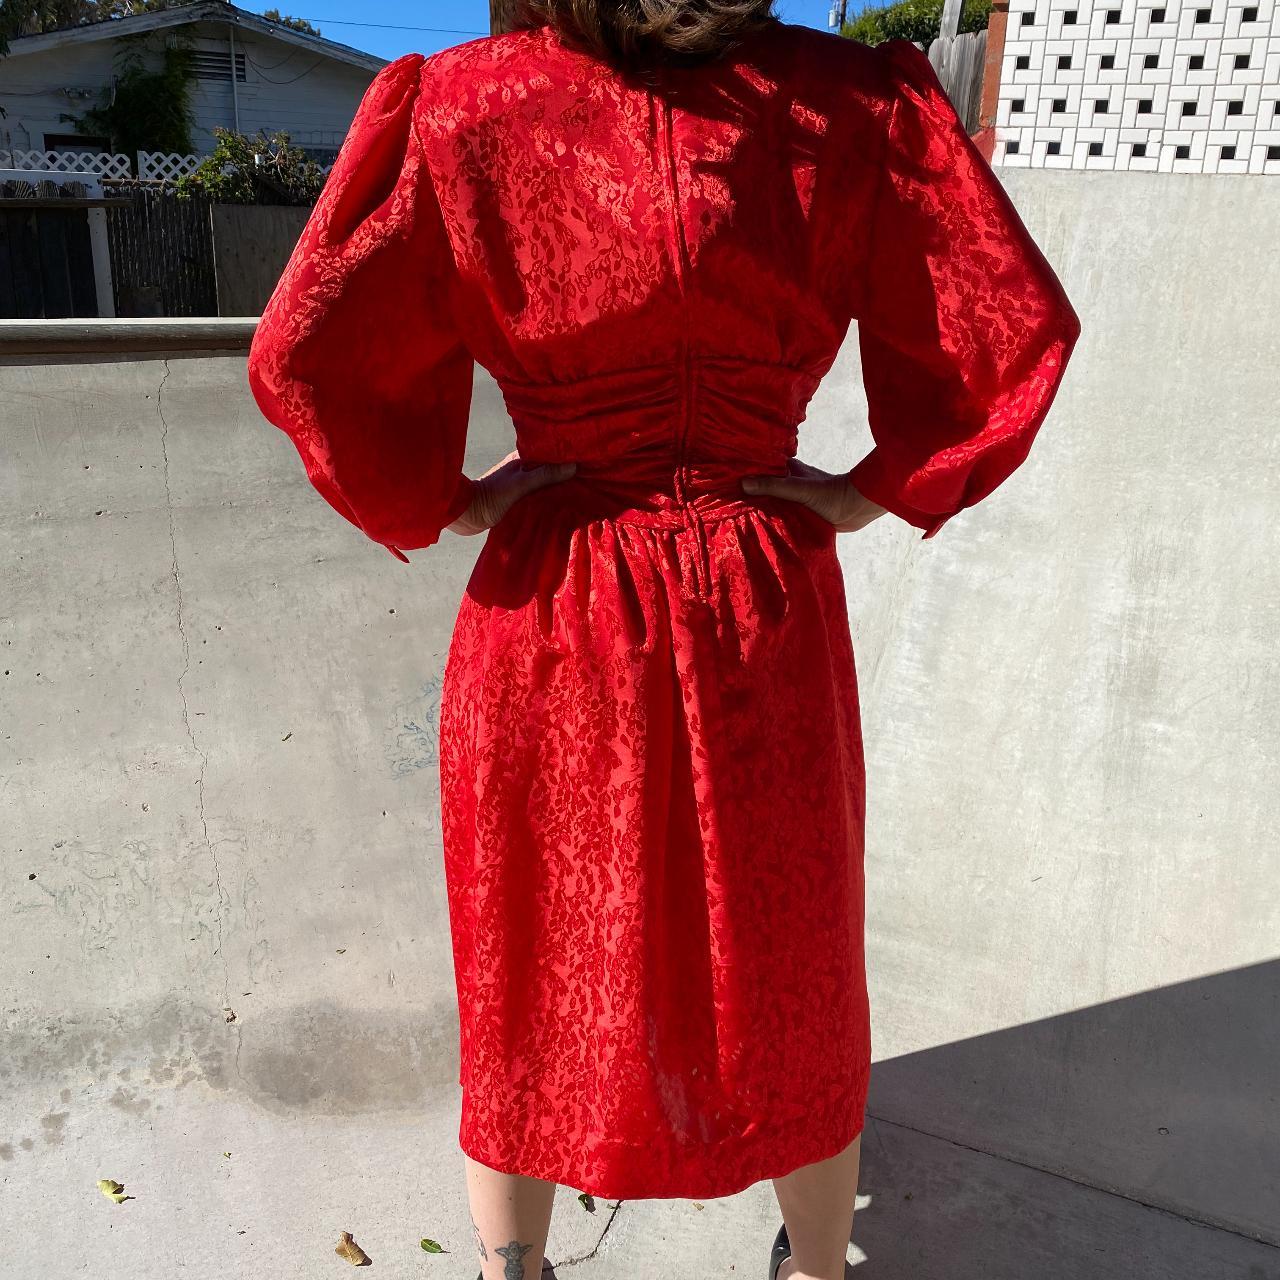 Impromptu Women's Red Dress (3)